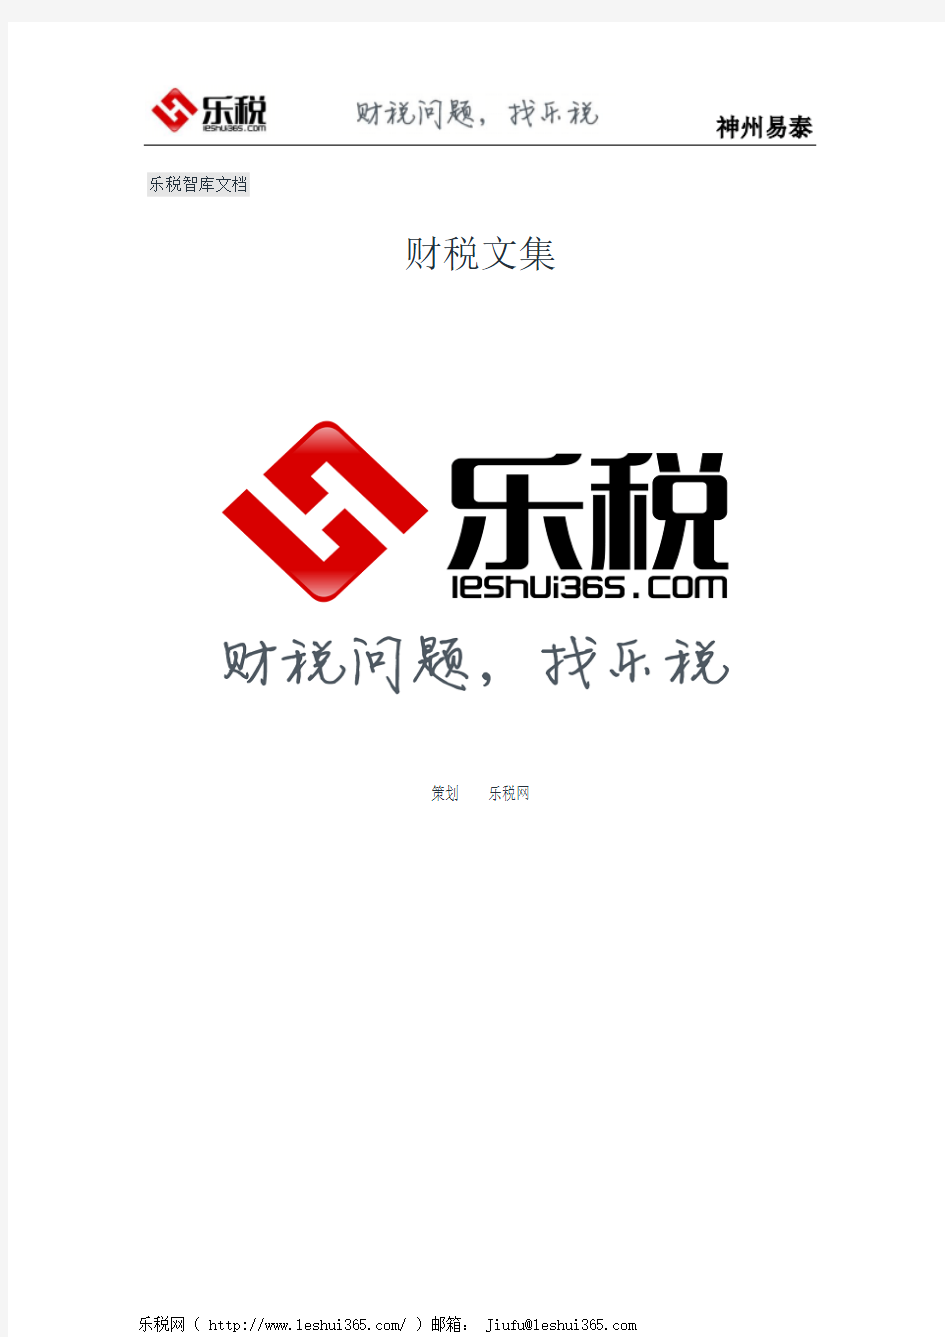 广州市国家税务局企业所得税汇算清缴网上申报办税指南